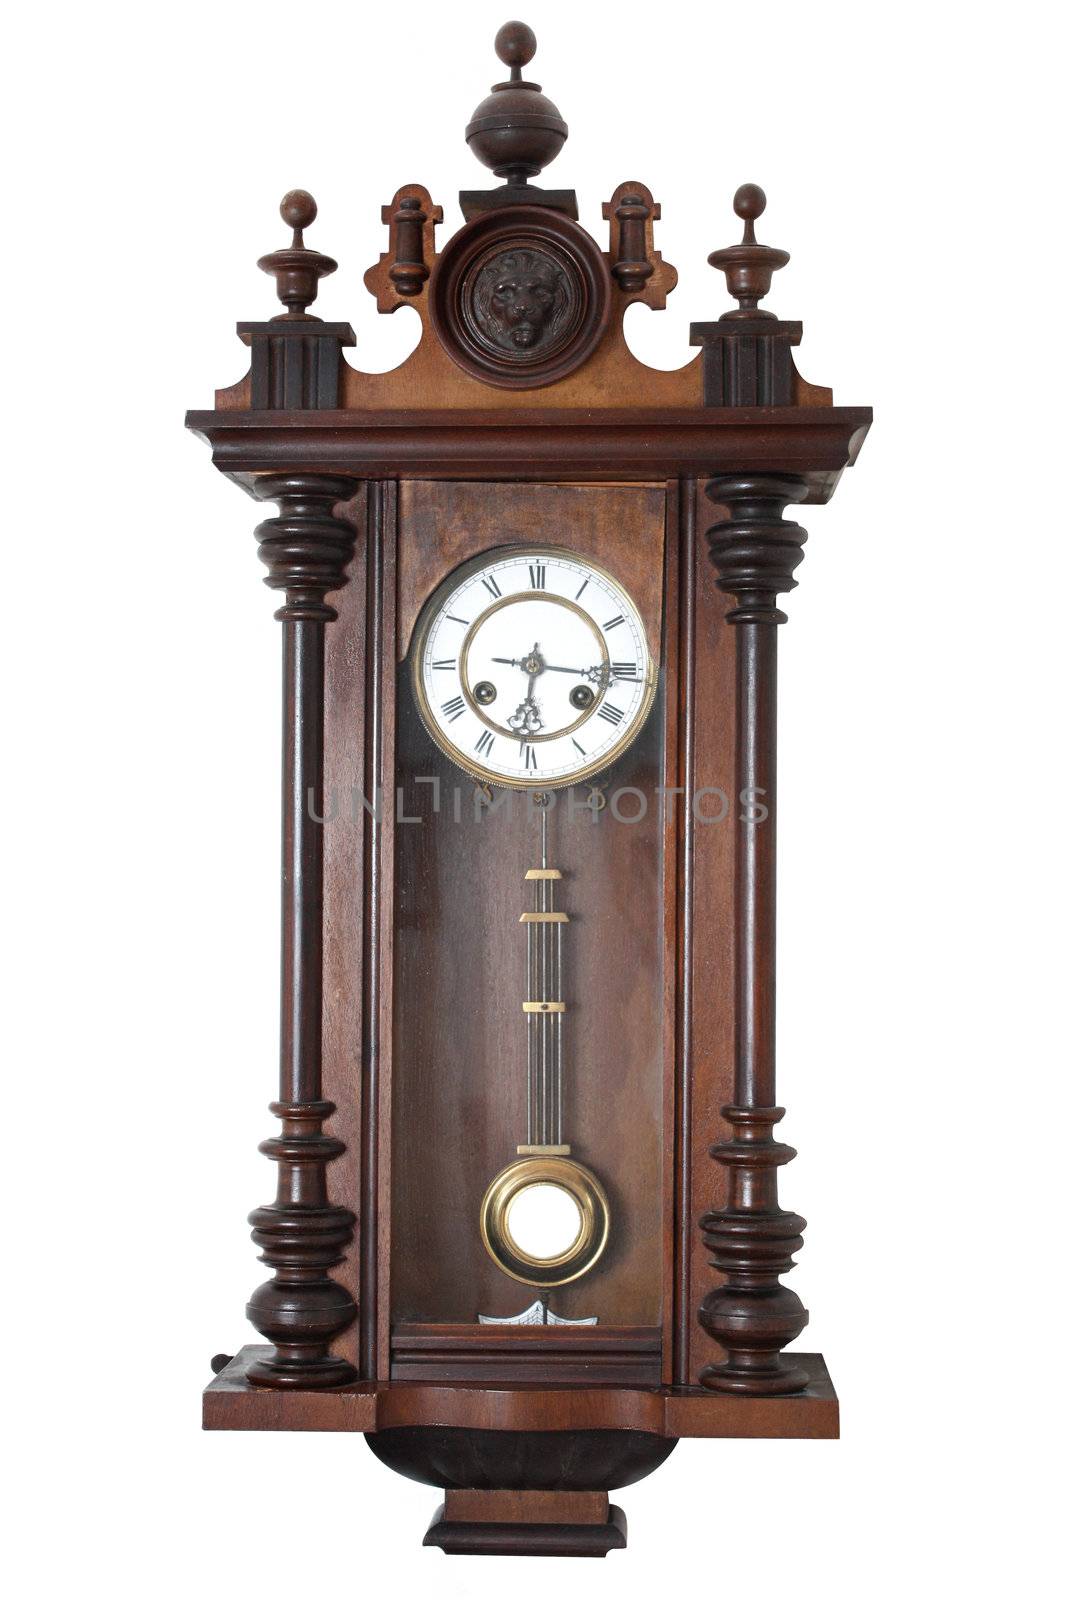 Old wall clock by leeser